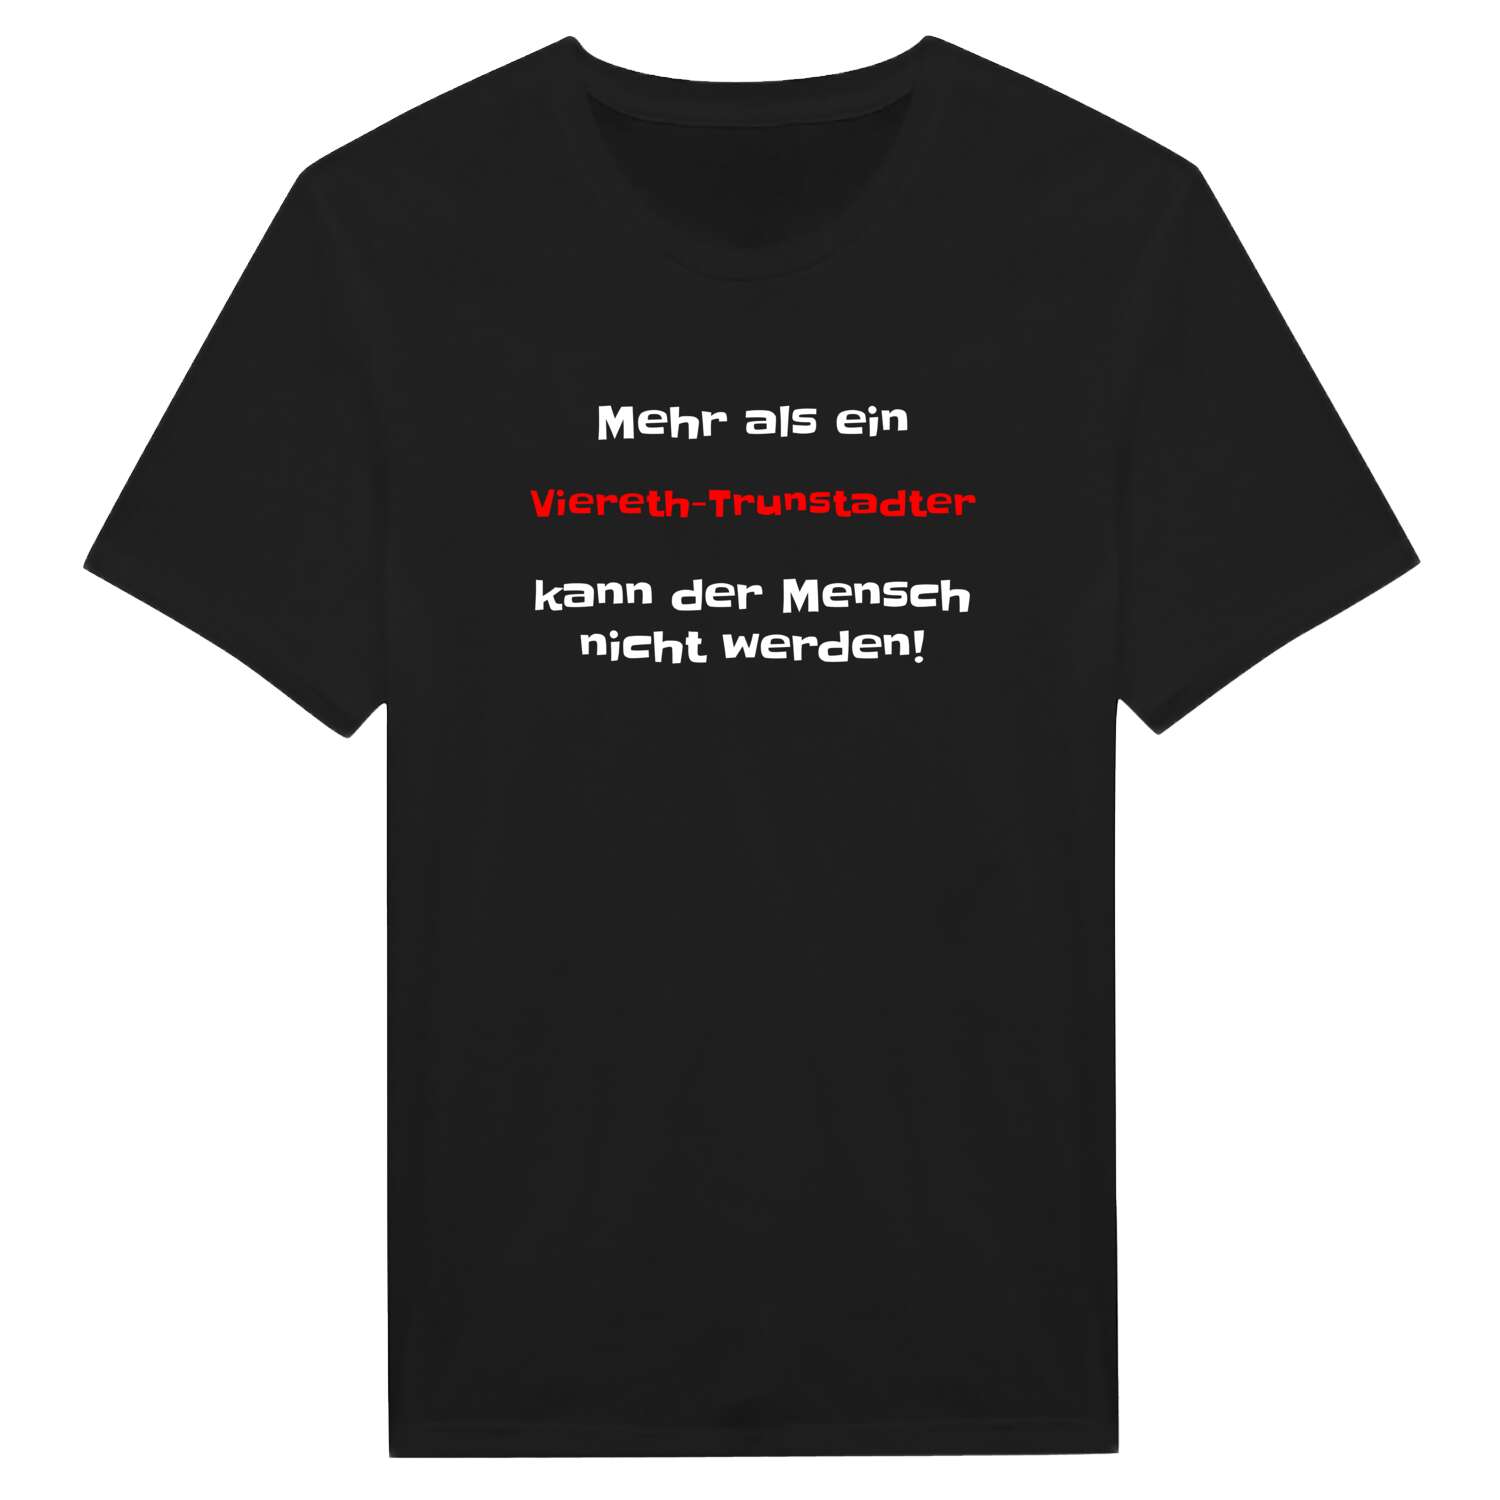 Viereth-Trunstadt T-Shirt »Mehr als ein«